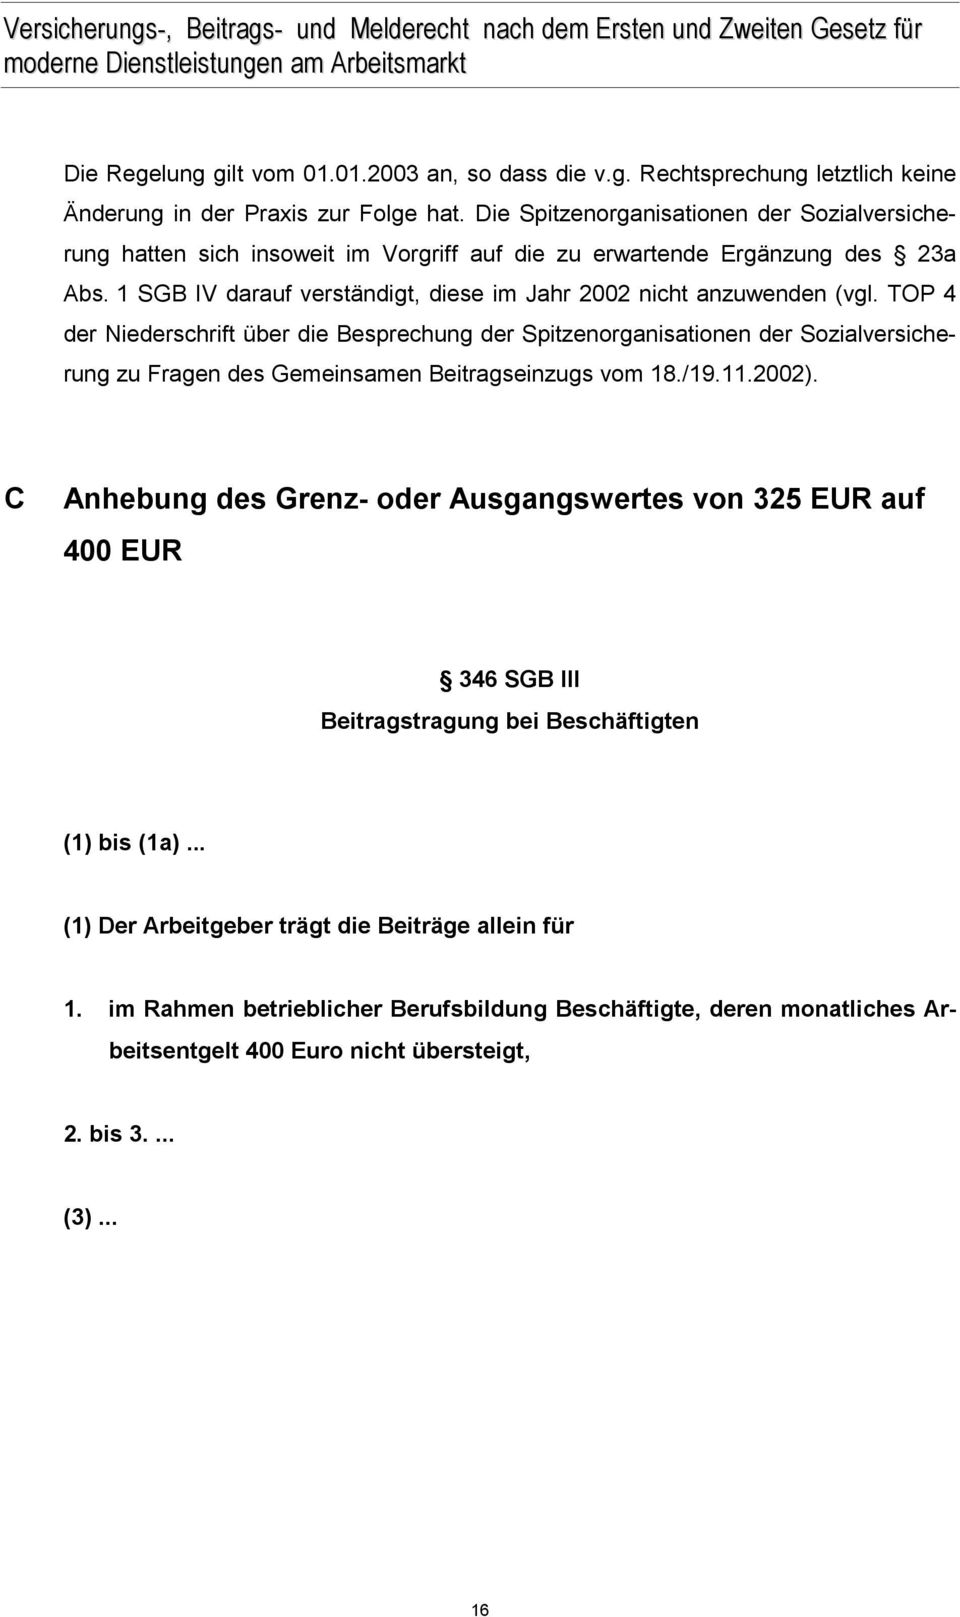 TOP 4 der Niederschrift über die Besprechung der Spitzenorganisationen der Sozialversicherung zu Fragen des Gemeinsamen Beitragseinzugs vom 18./19.11.2002).